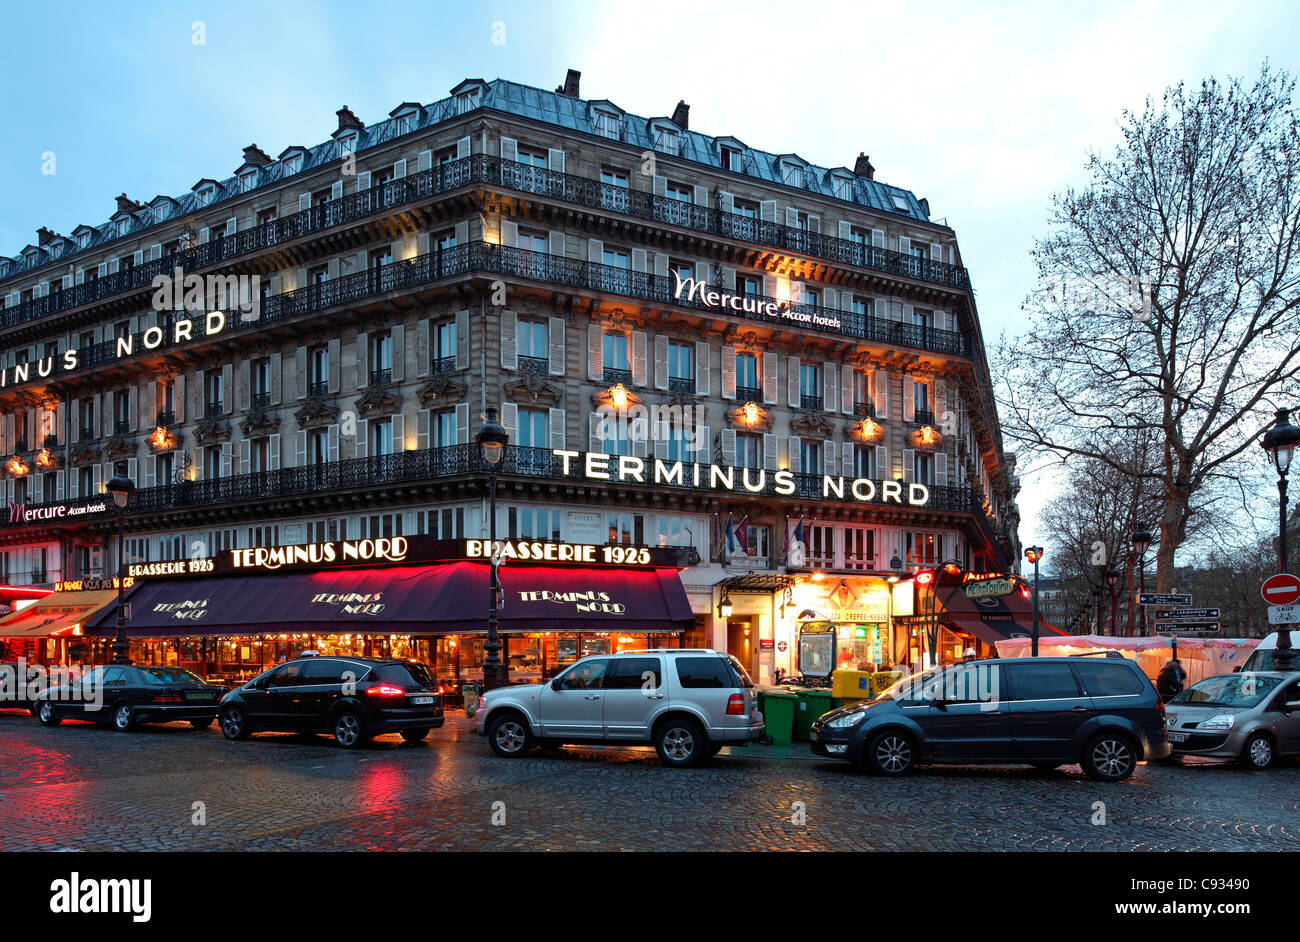 El hotel Terminus Nord en París, enfrente de la estación Gare du Nord, hogar del Eurostar y puerta de entrada a Londres. Foto de stock